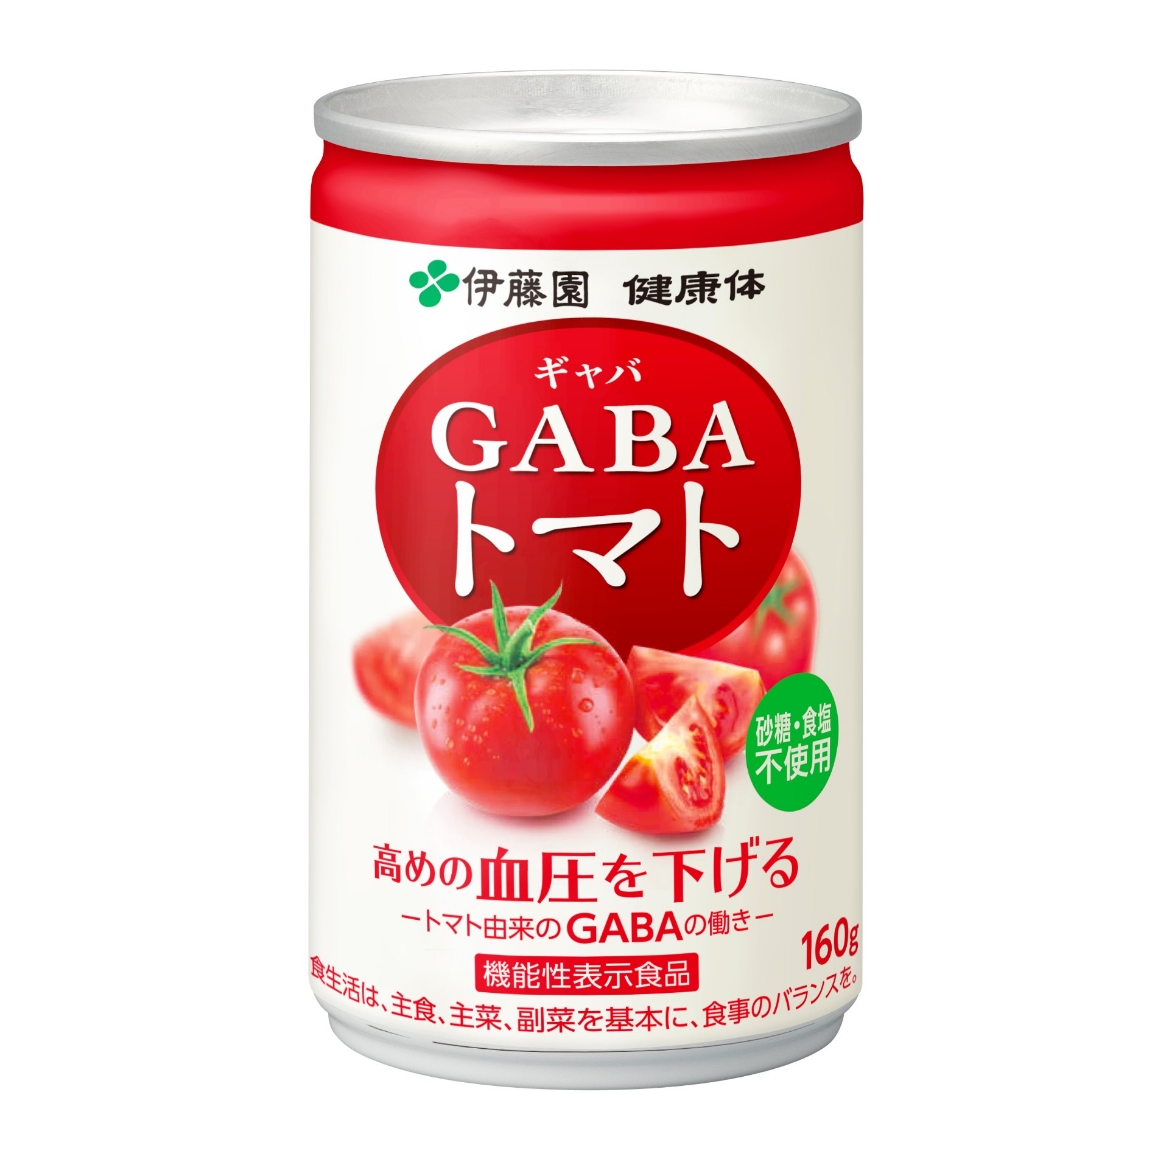 GABAトマト